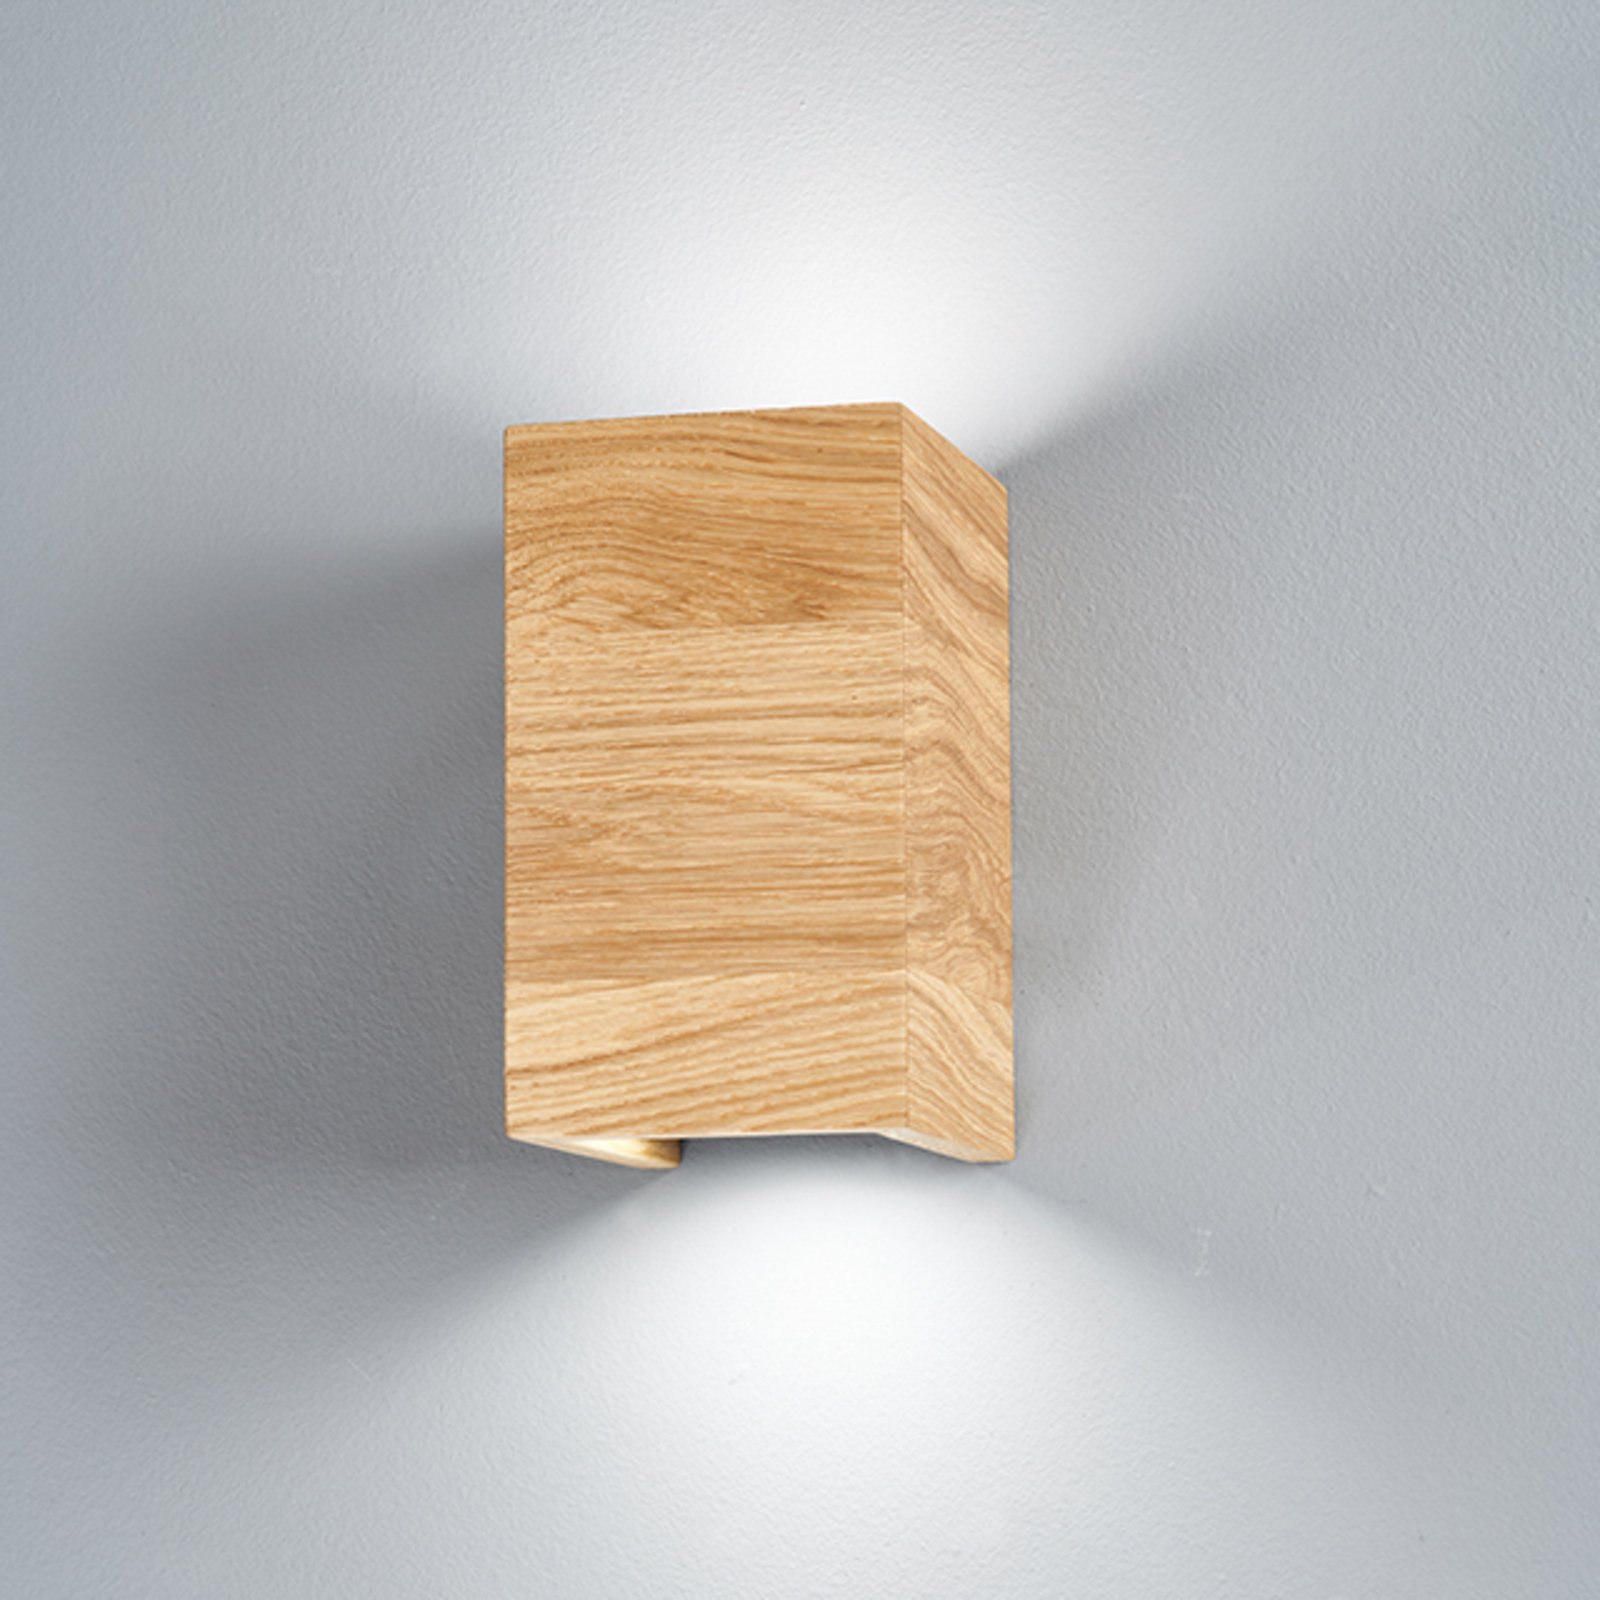 LED nástěnné světlo Shine-Wood dub 2xGU10 10x18cm